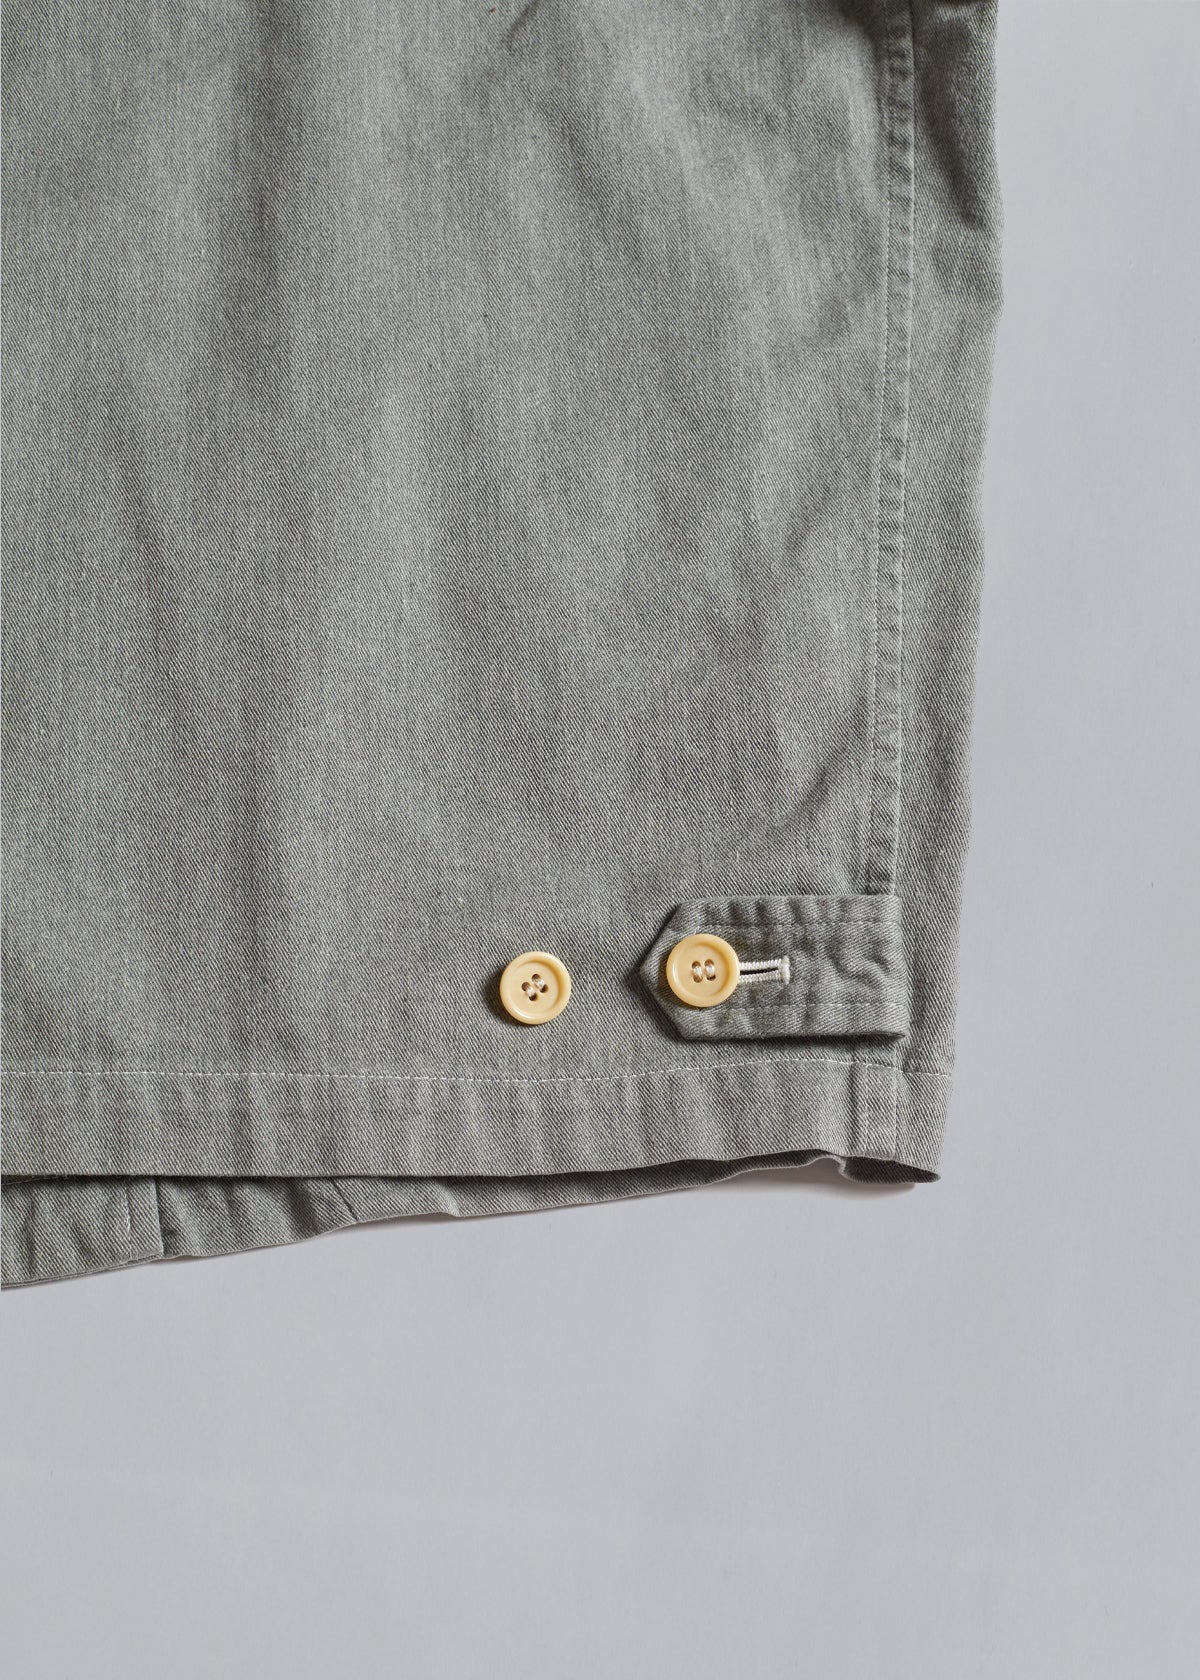 Homme Grey Cotton Zip Work Jacket 1988 - Medium - The Archivist Store